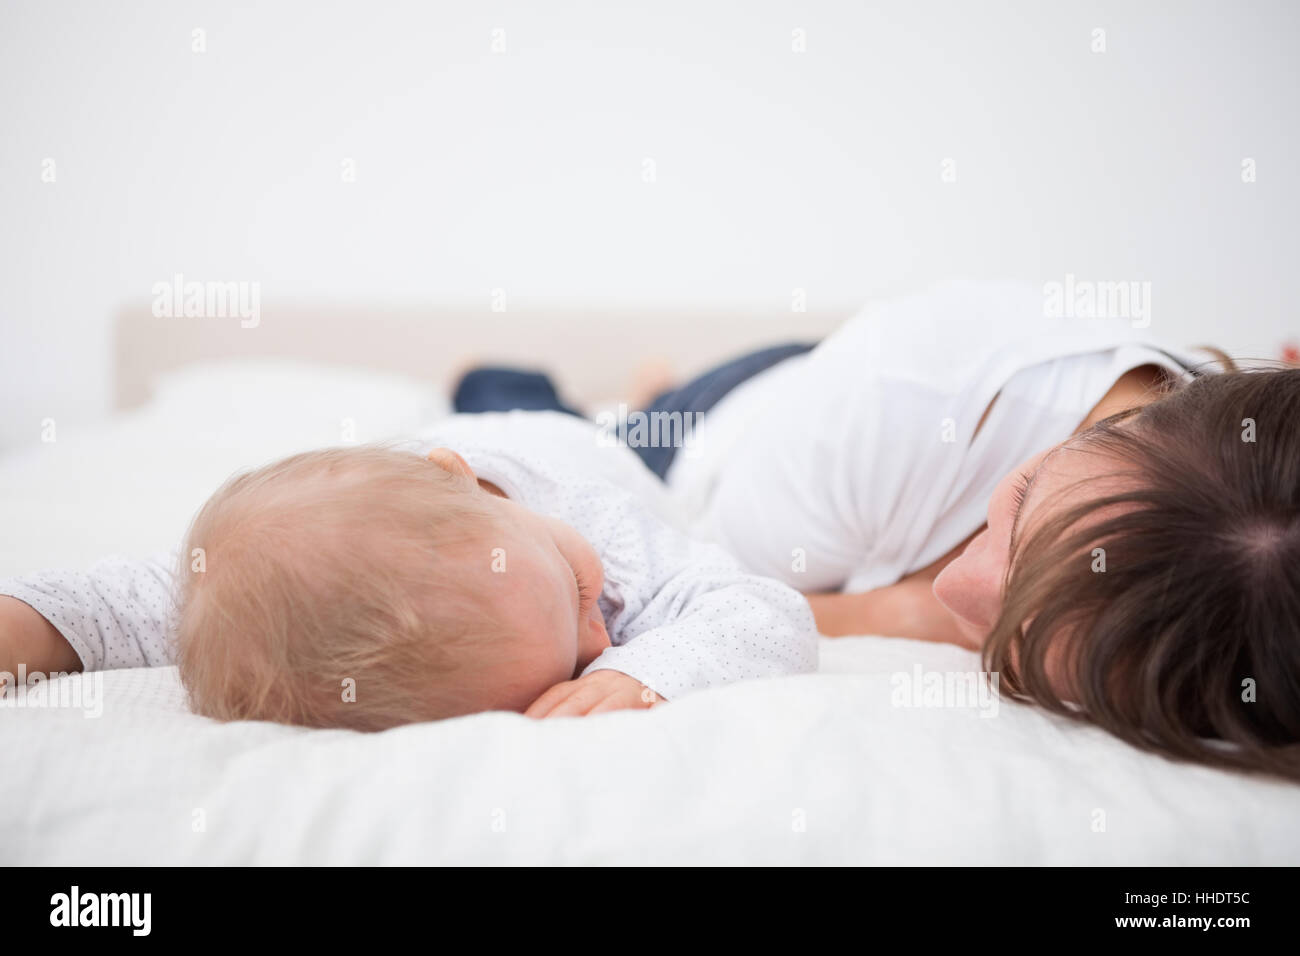 Она лежит как маме. Мама лежит с малышом. Мама с младенцем лежат на кровати. Ребенок лежит на маме. Девушка лежит с малышом.